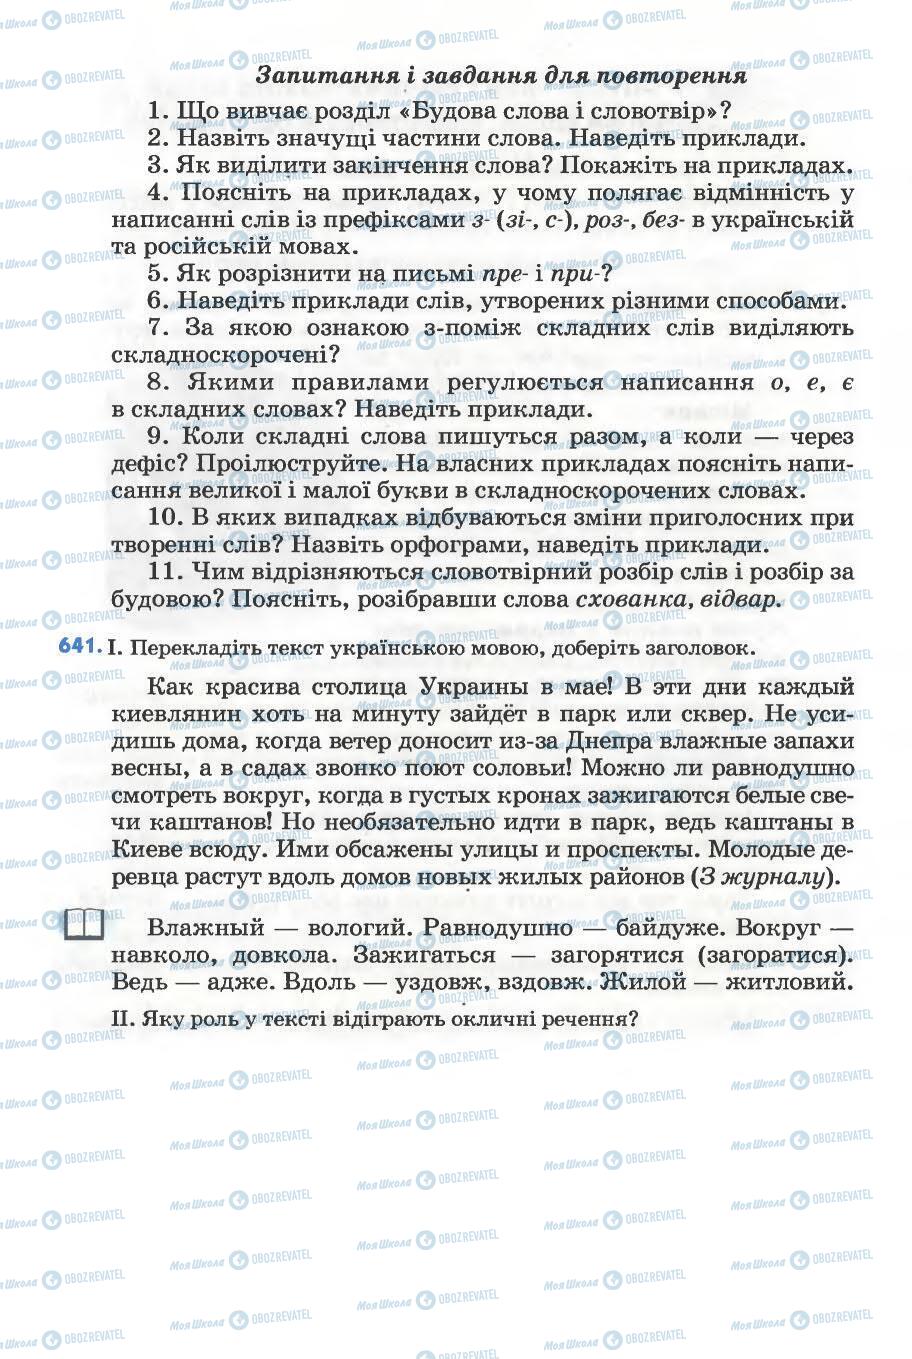 Підручники Українська мова 5 клас сторінка 260